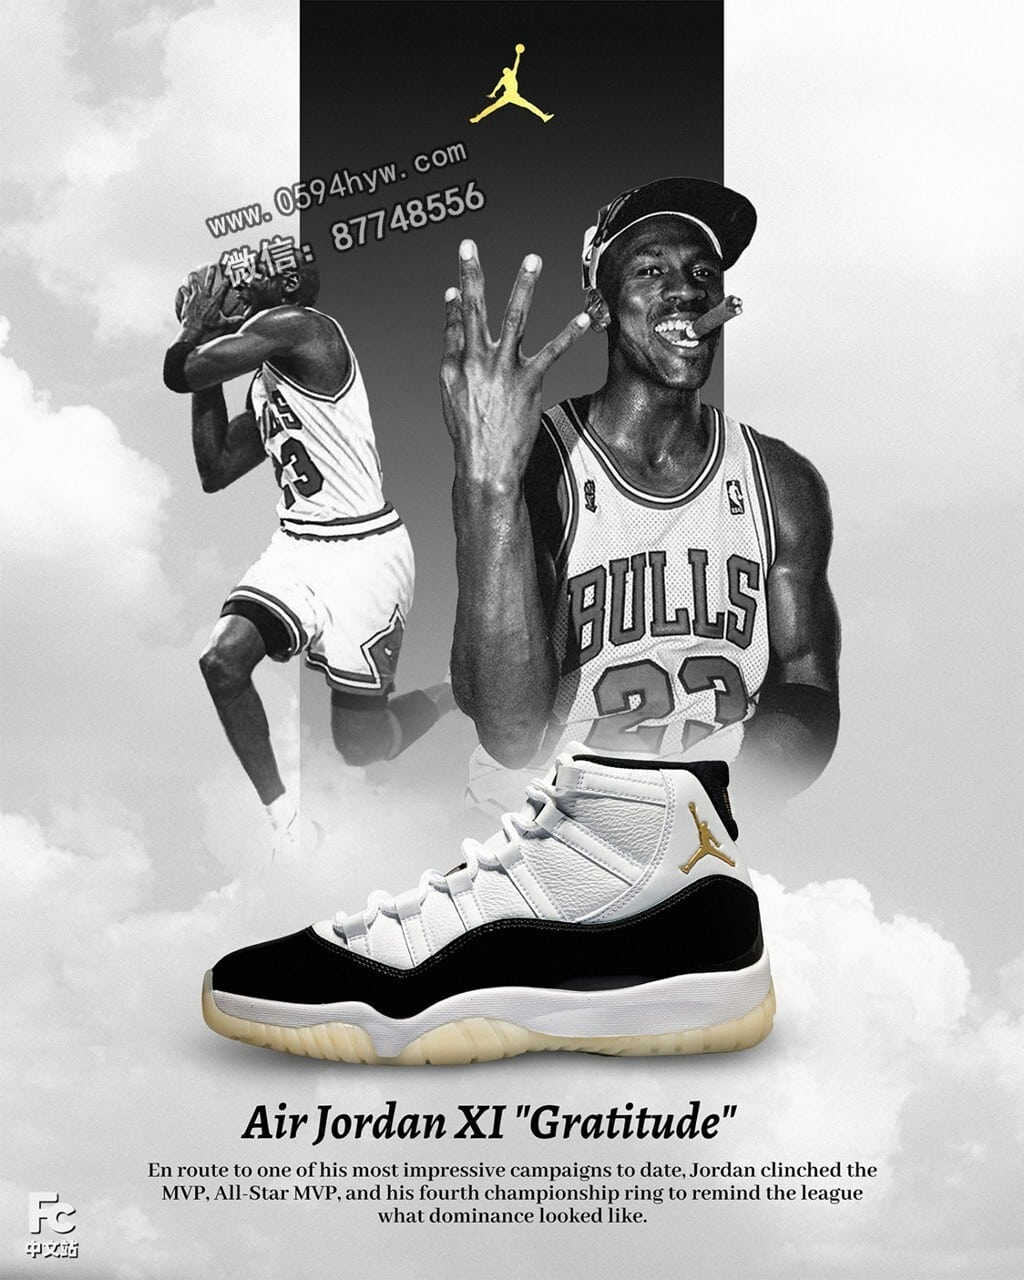 篮球鞋, Jordan, Gratitude, AJ11, Aj1, Air Jordan 11, Air Jordan 1, Air Jordan